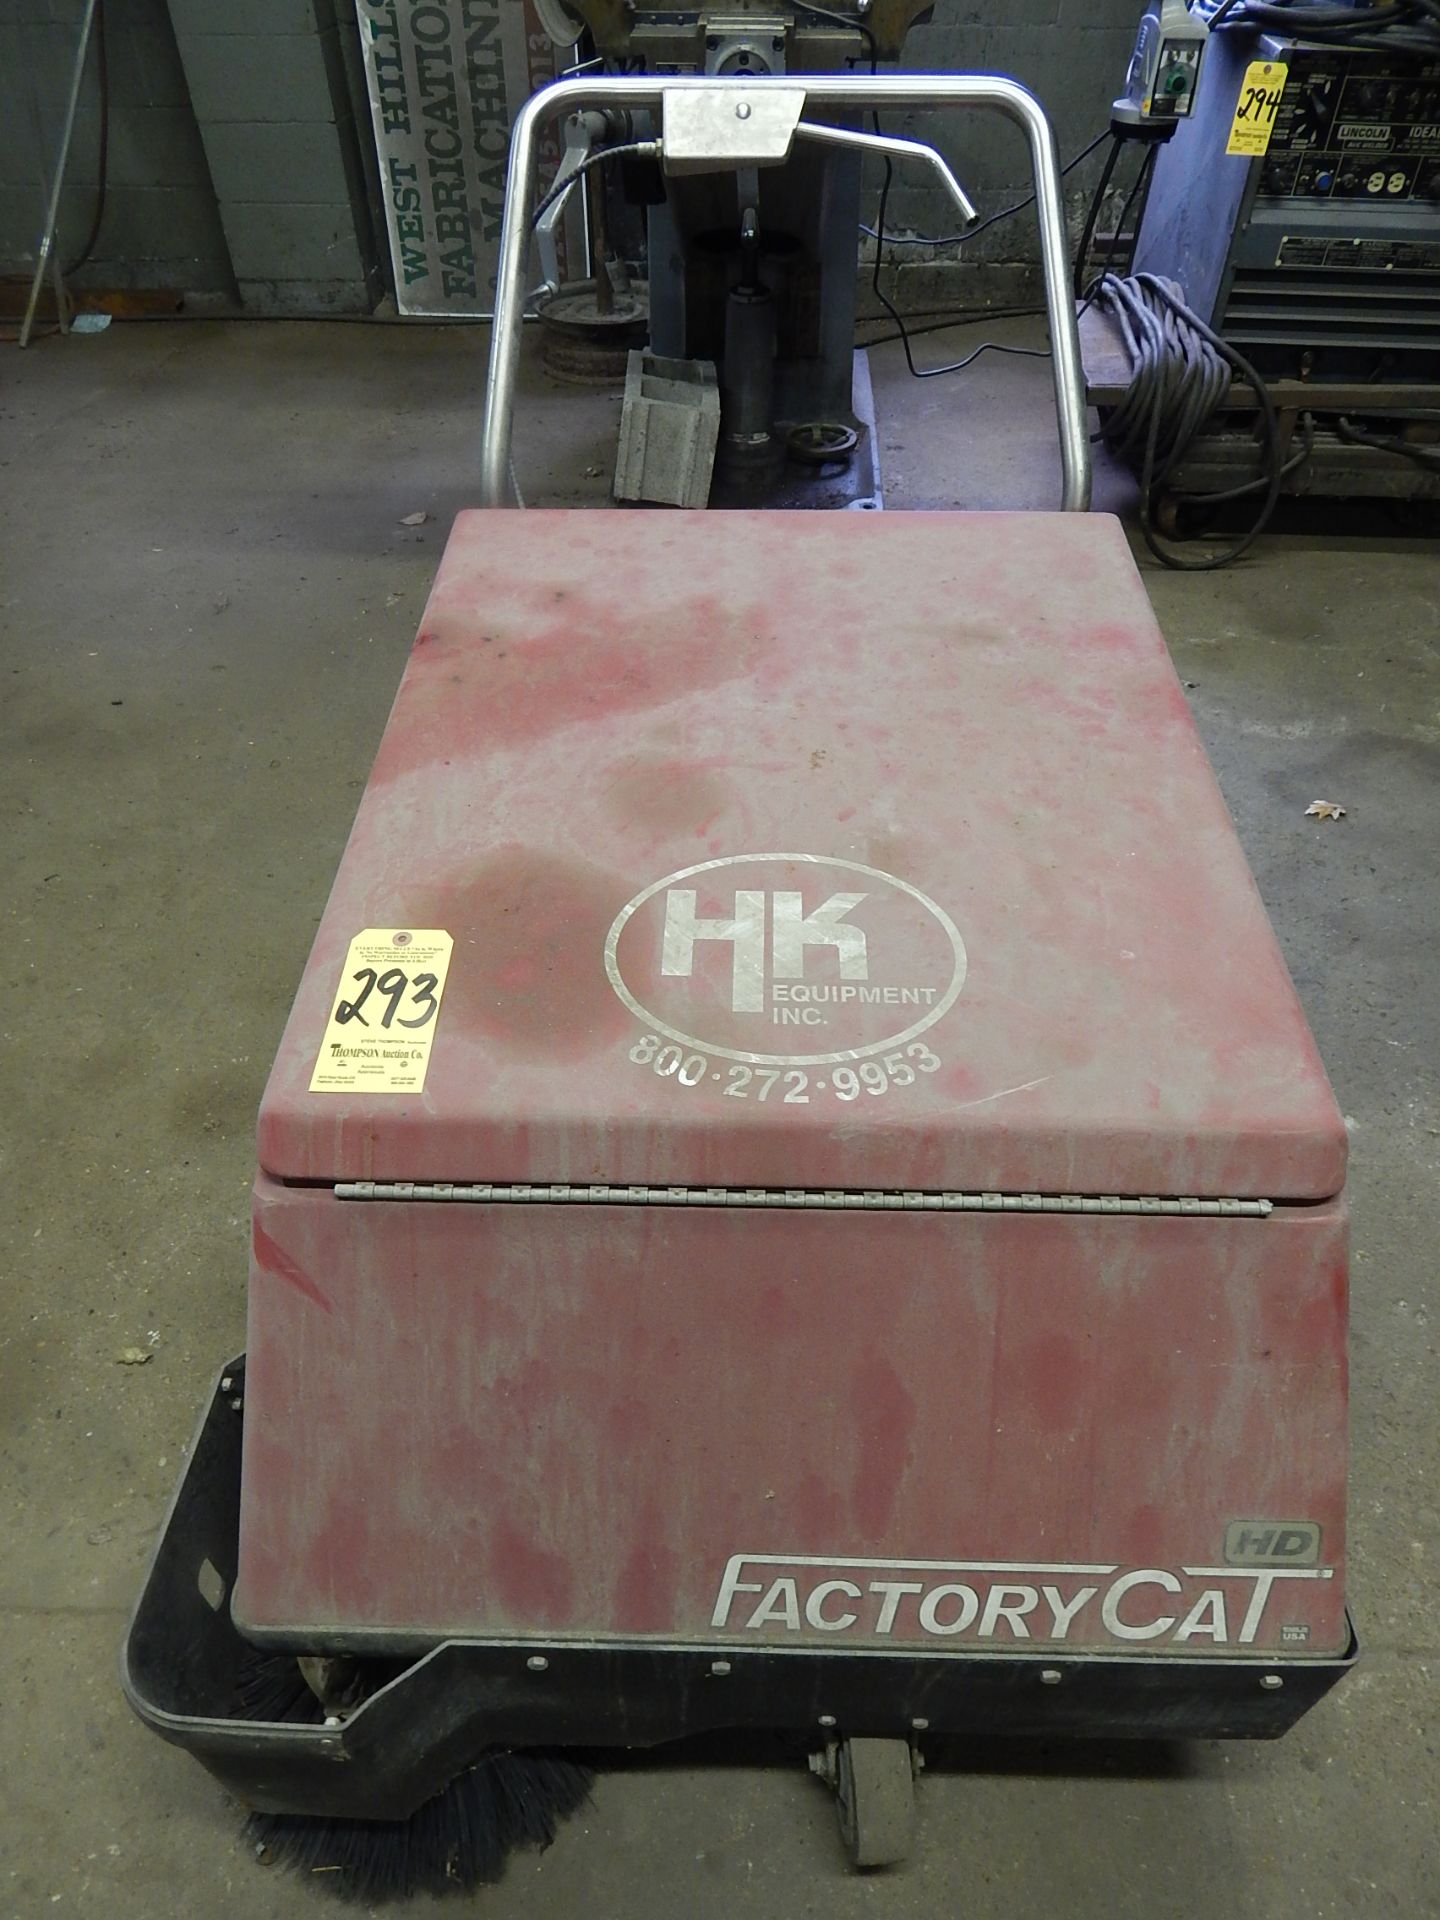 Factory Cat Model 34 Walk Behind Electric Floor Sweeper, s/n 52471